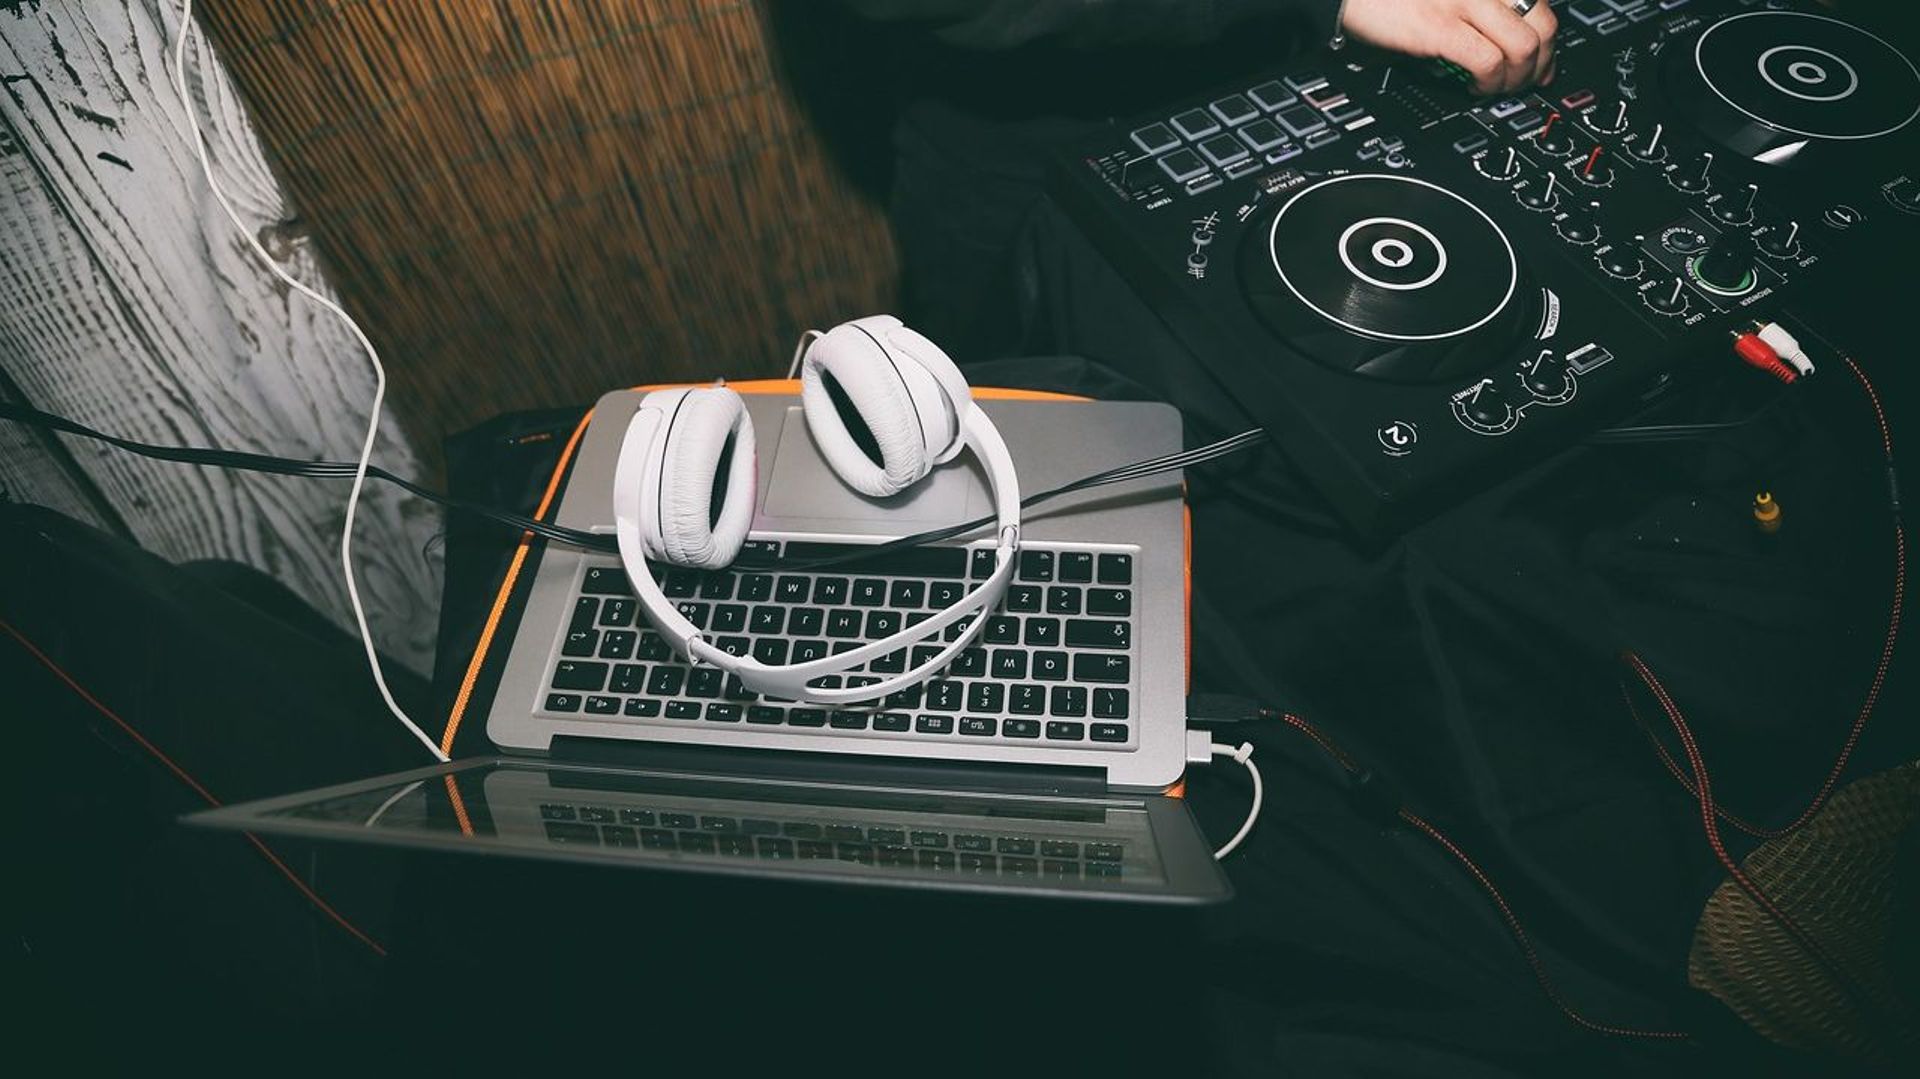 Fête de la Musique 2020: les DJ sets de ce week-end sur Jam